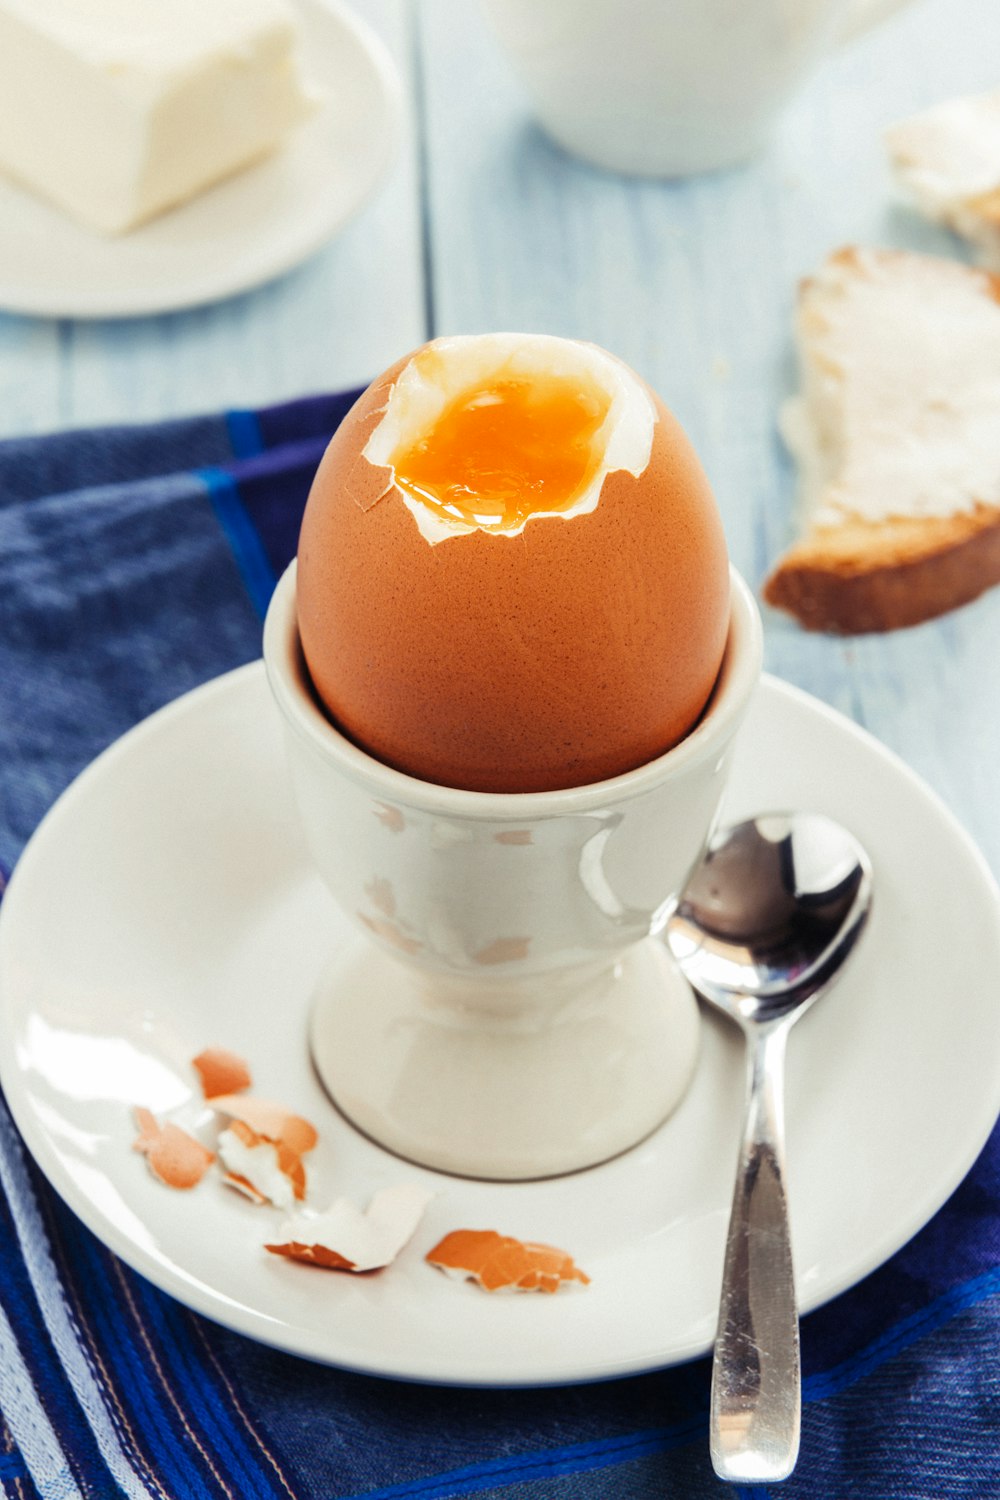 Astuce pour éplucher un œuf dur - Le blog StarOfService